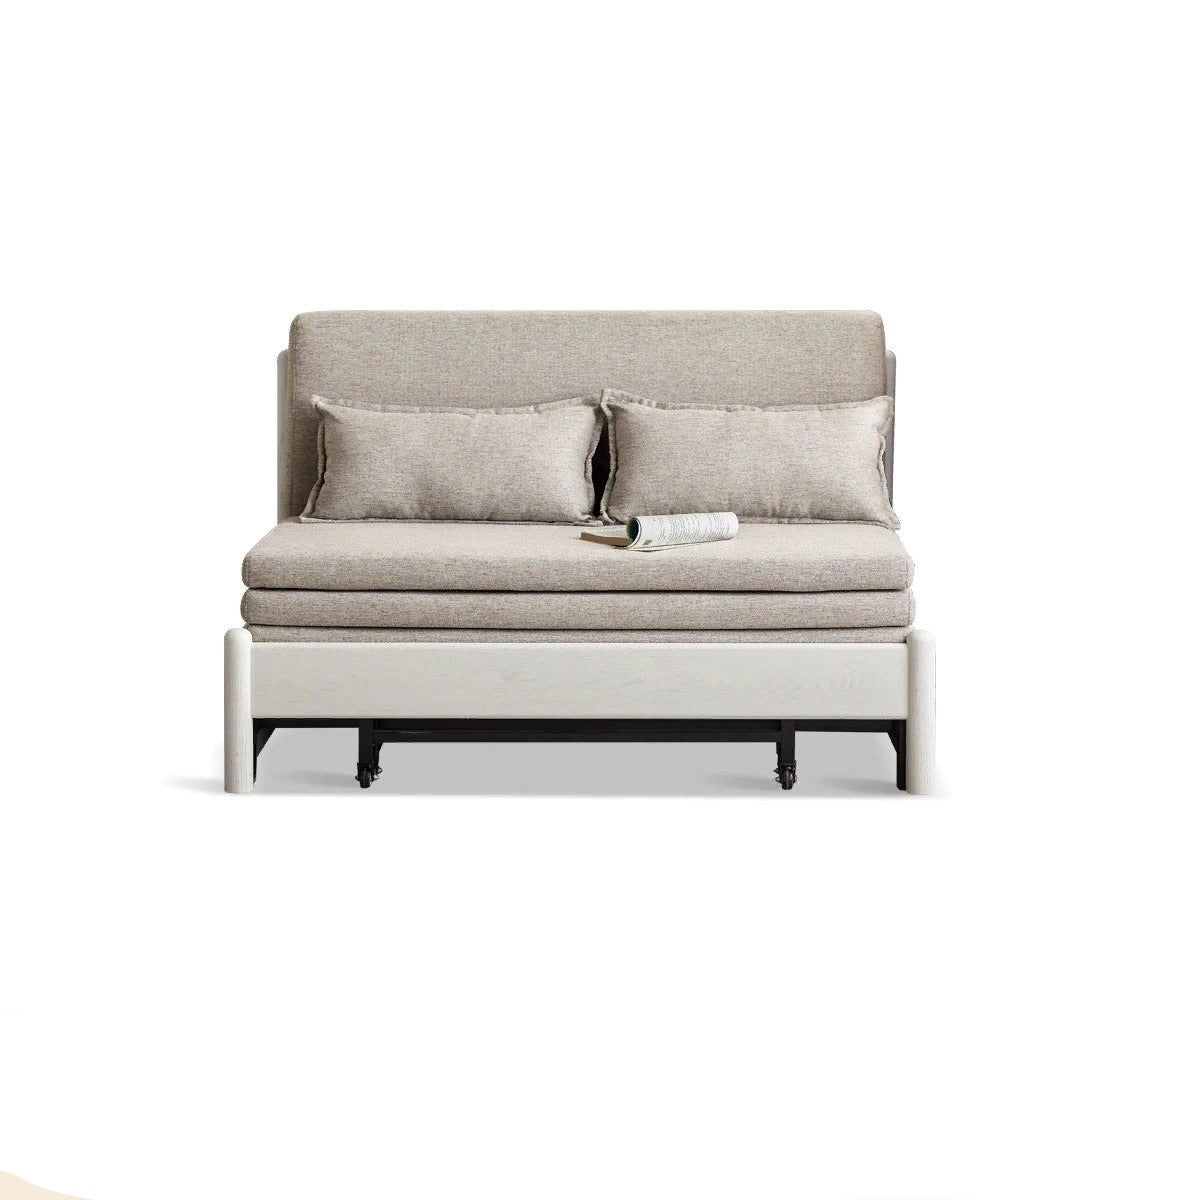 Oak solid wood sofa bed cream style folding sofa+